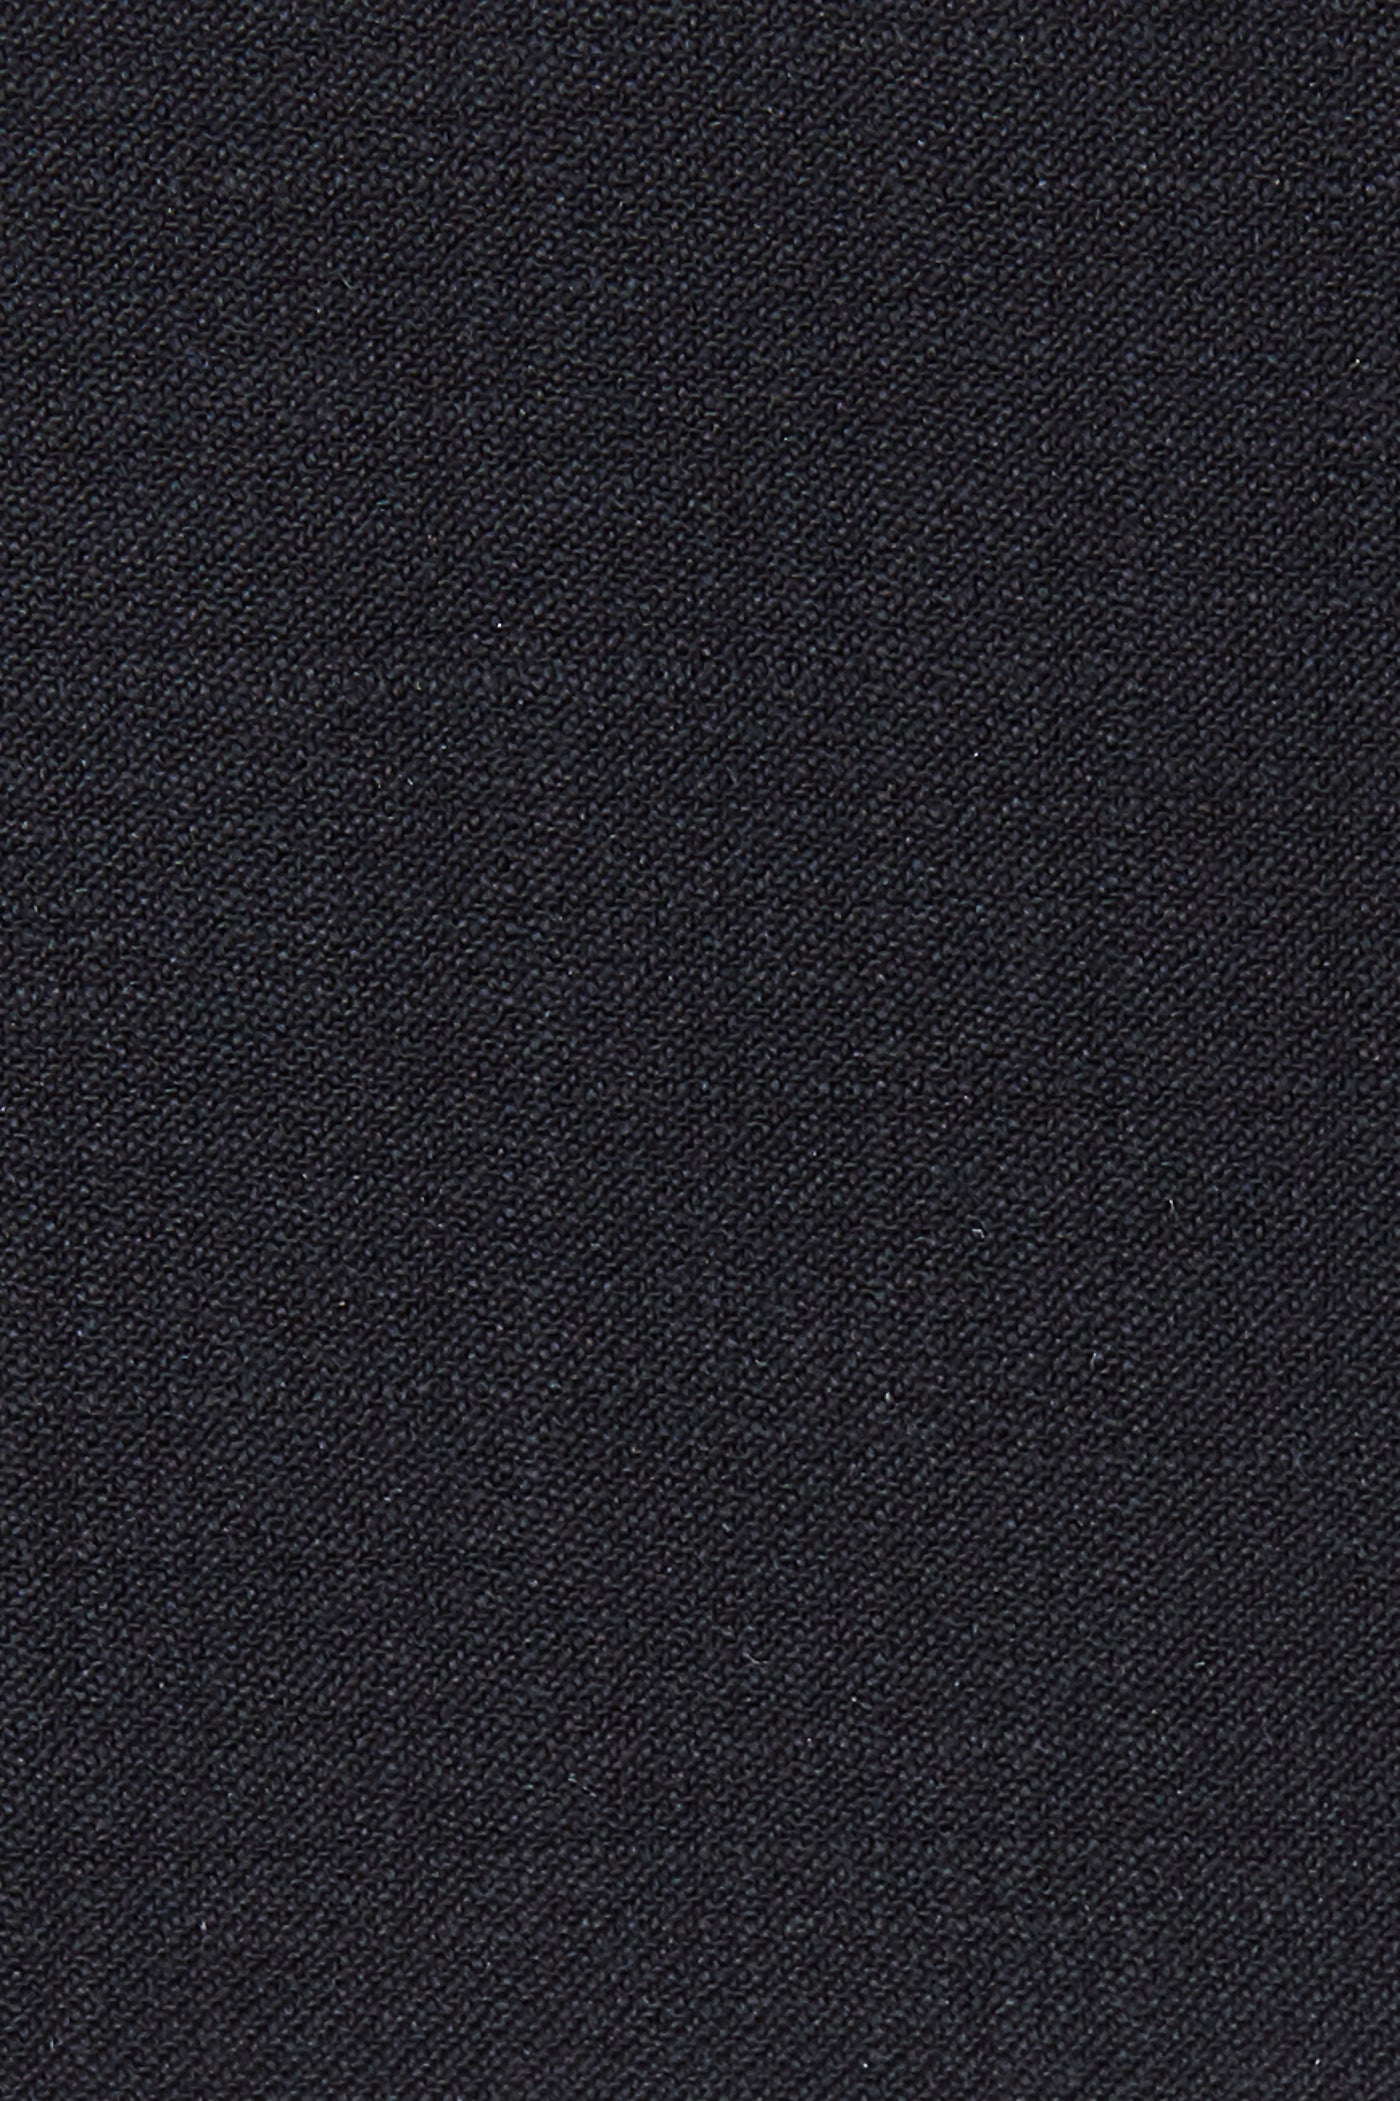 Royal Blue Wool Vest - The Suit Spot